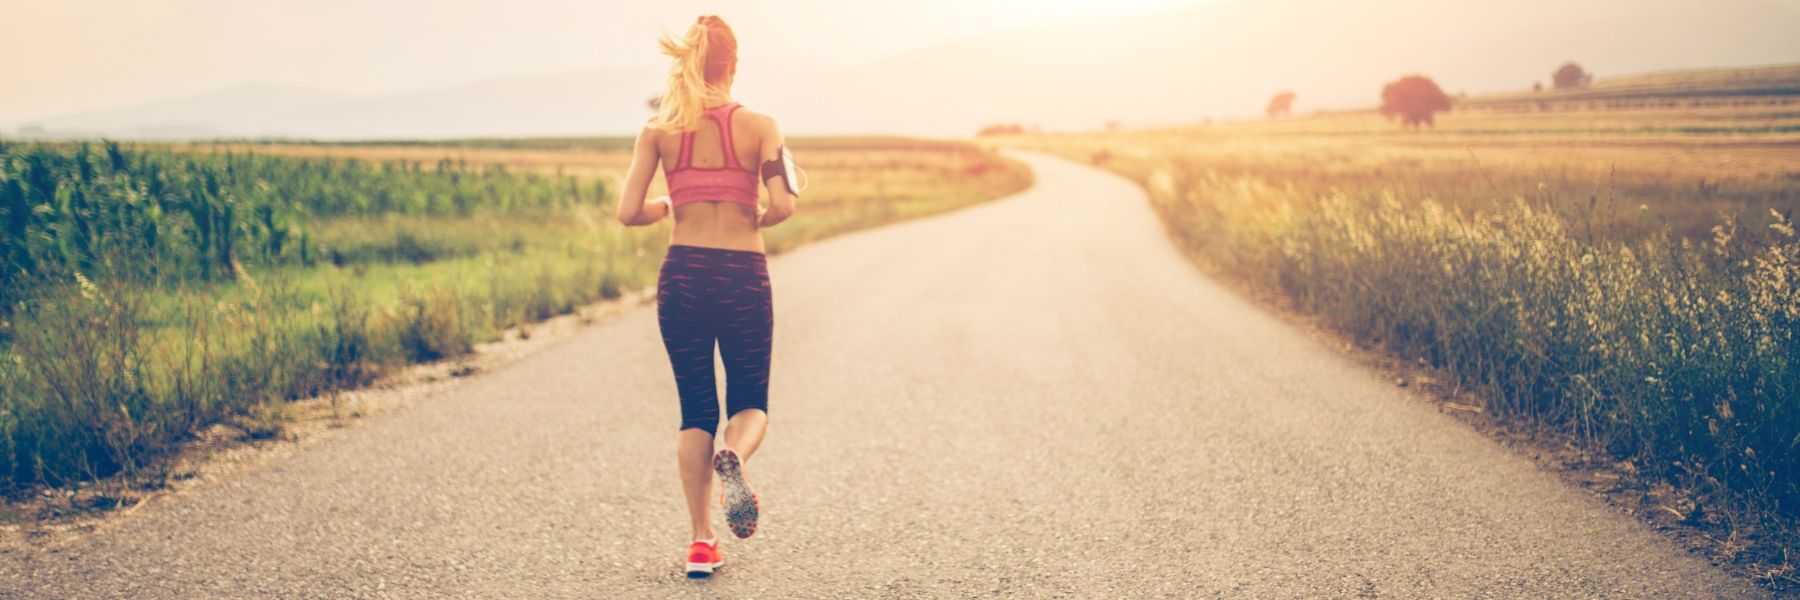 Entdecke essentielle Tipps für Laufanfänger in unserem Blogbeitrag. Von der Auswahl der richtigen Laufschuhe bis zum effektiven Trainingsaufbau – starte jetzt dein Jogging-Abenteuer mit Erfolg und Freude!